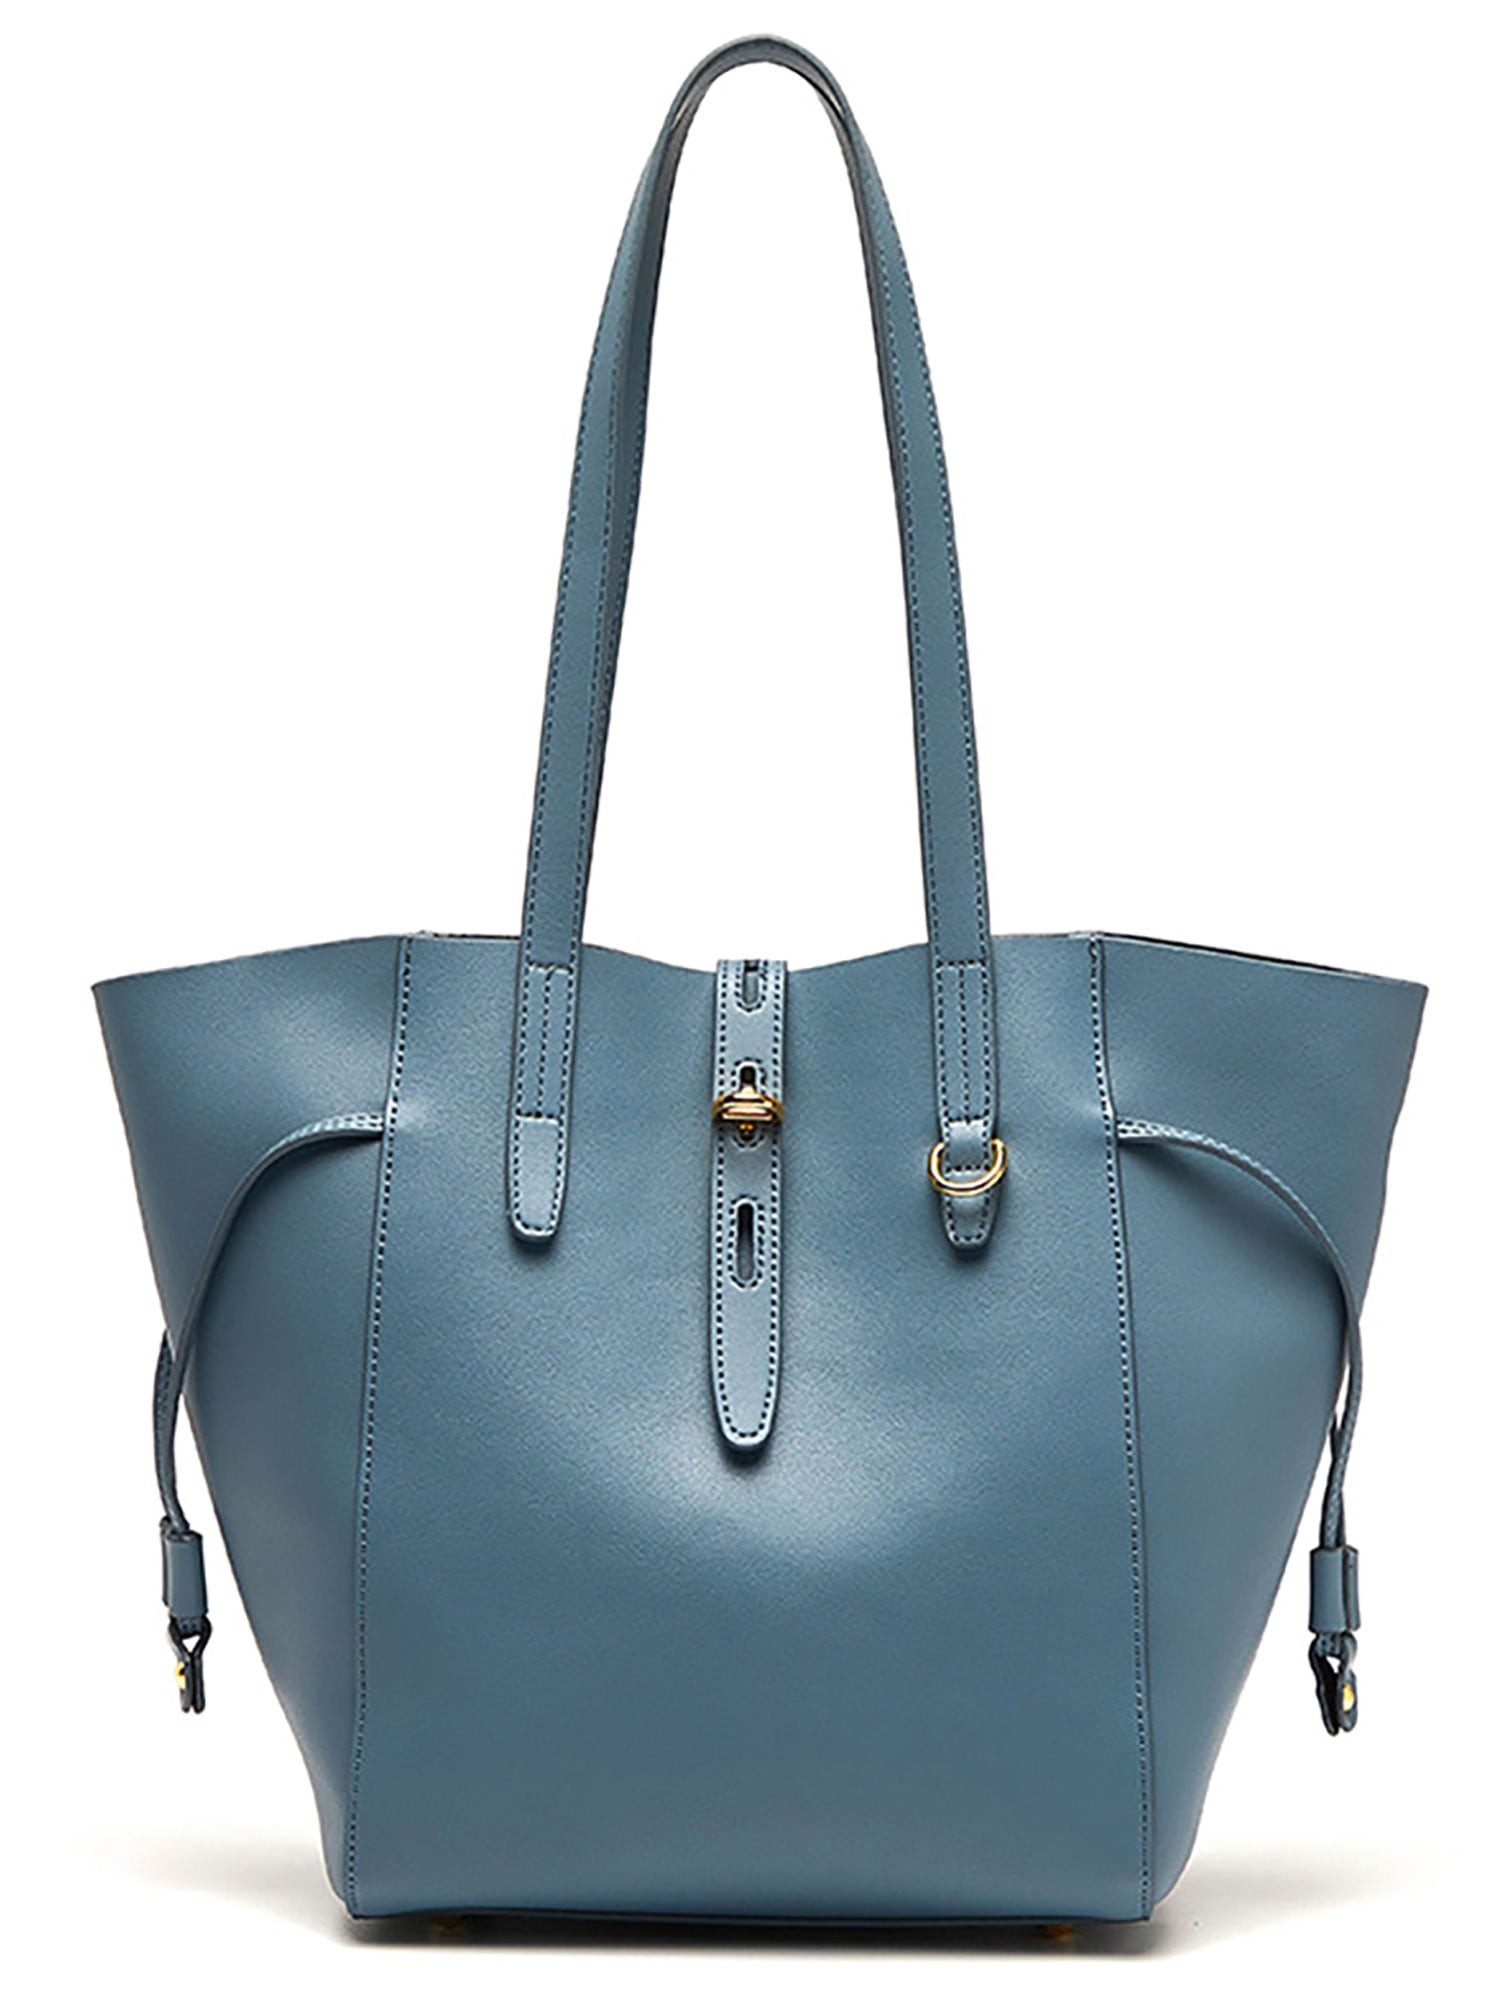 Ladies Leather Handbag Womens Large Capacity Ladies Tote Bag Top-Handle Purple,43cm